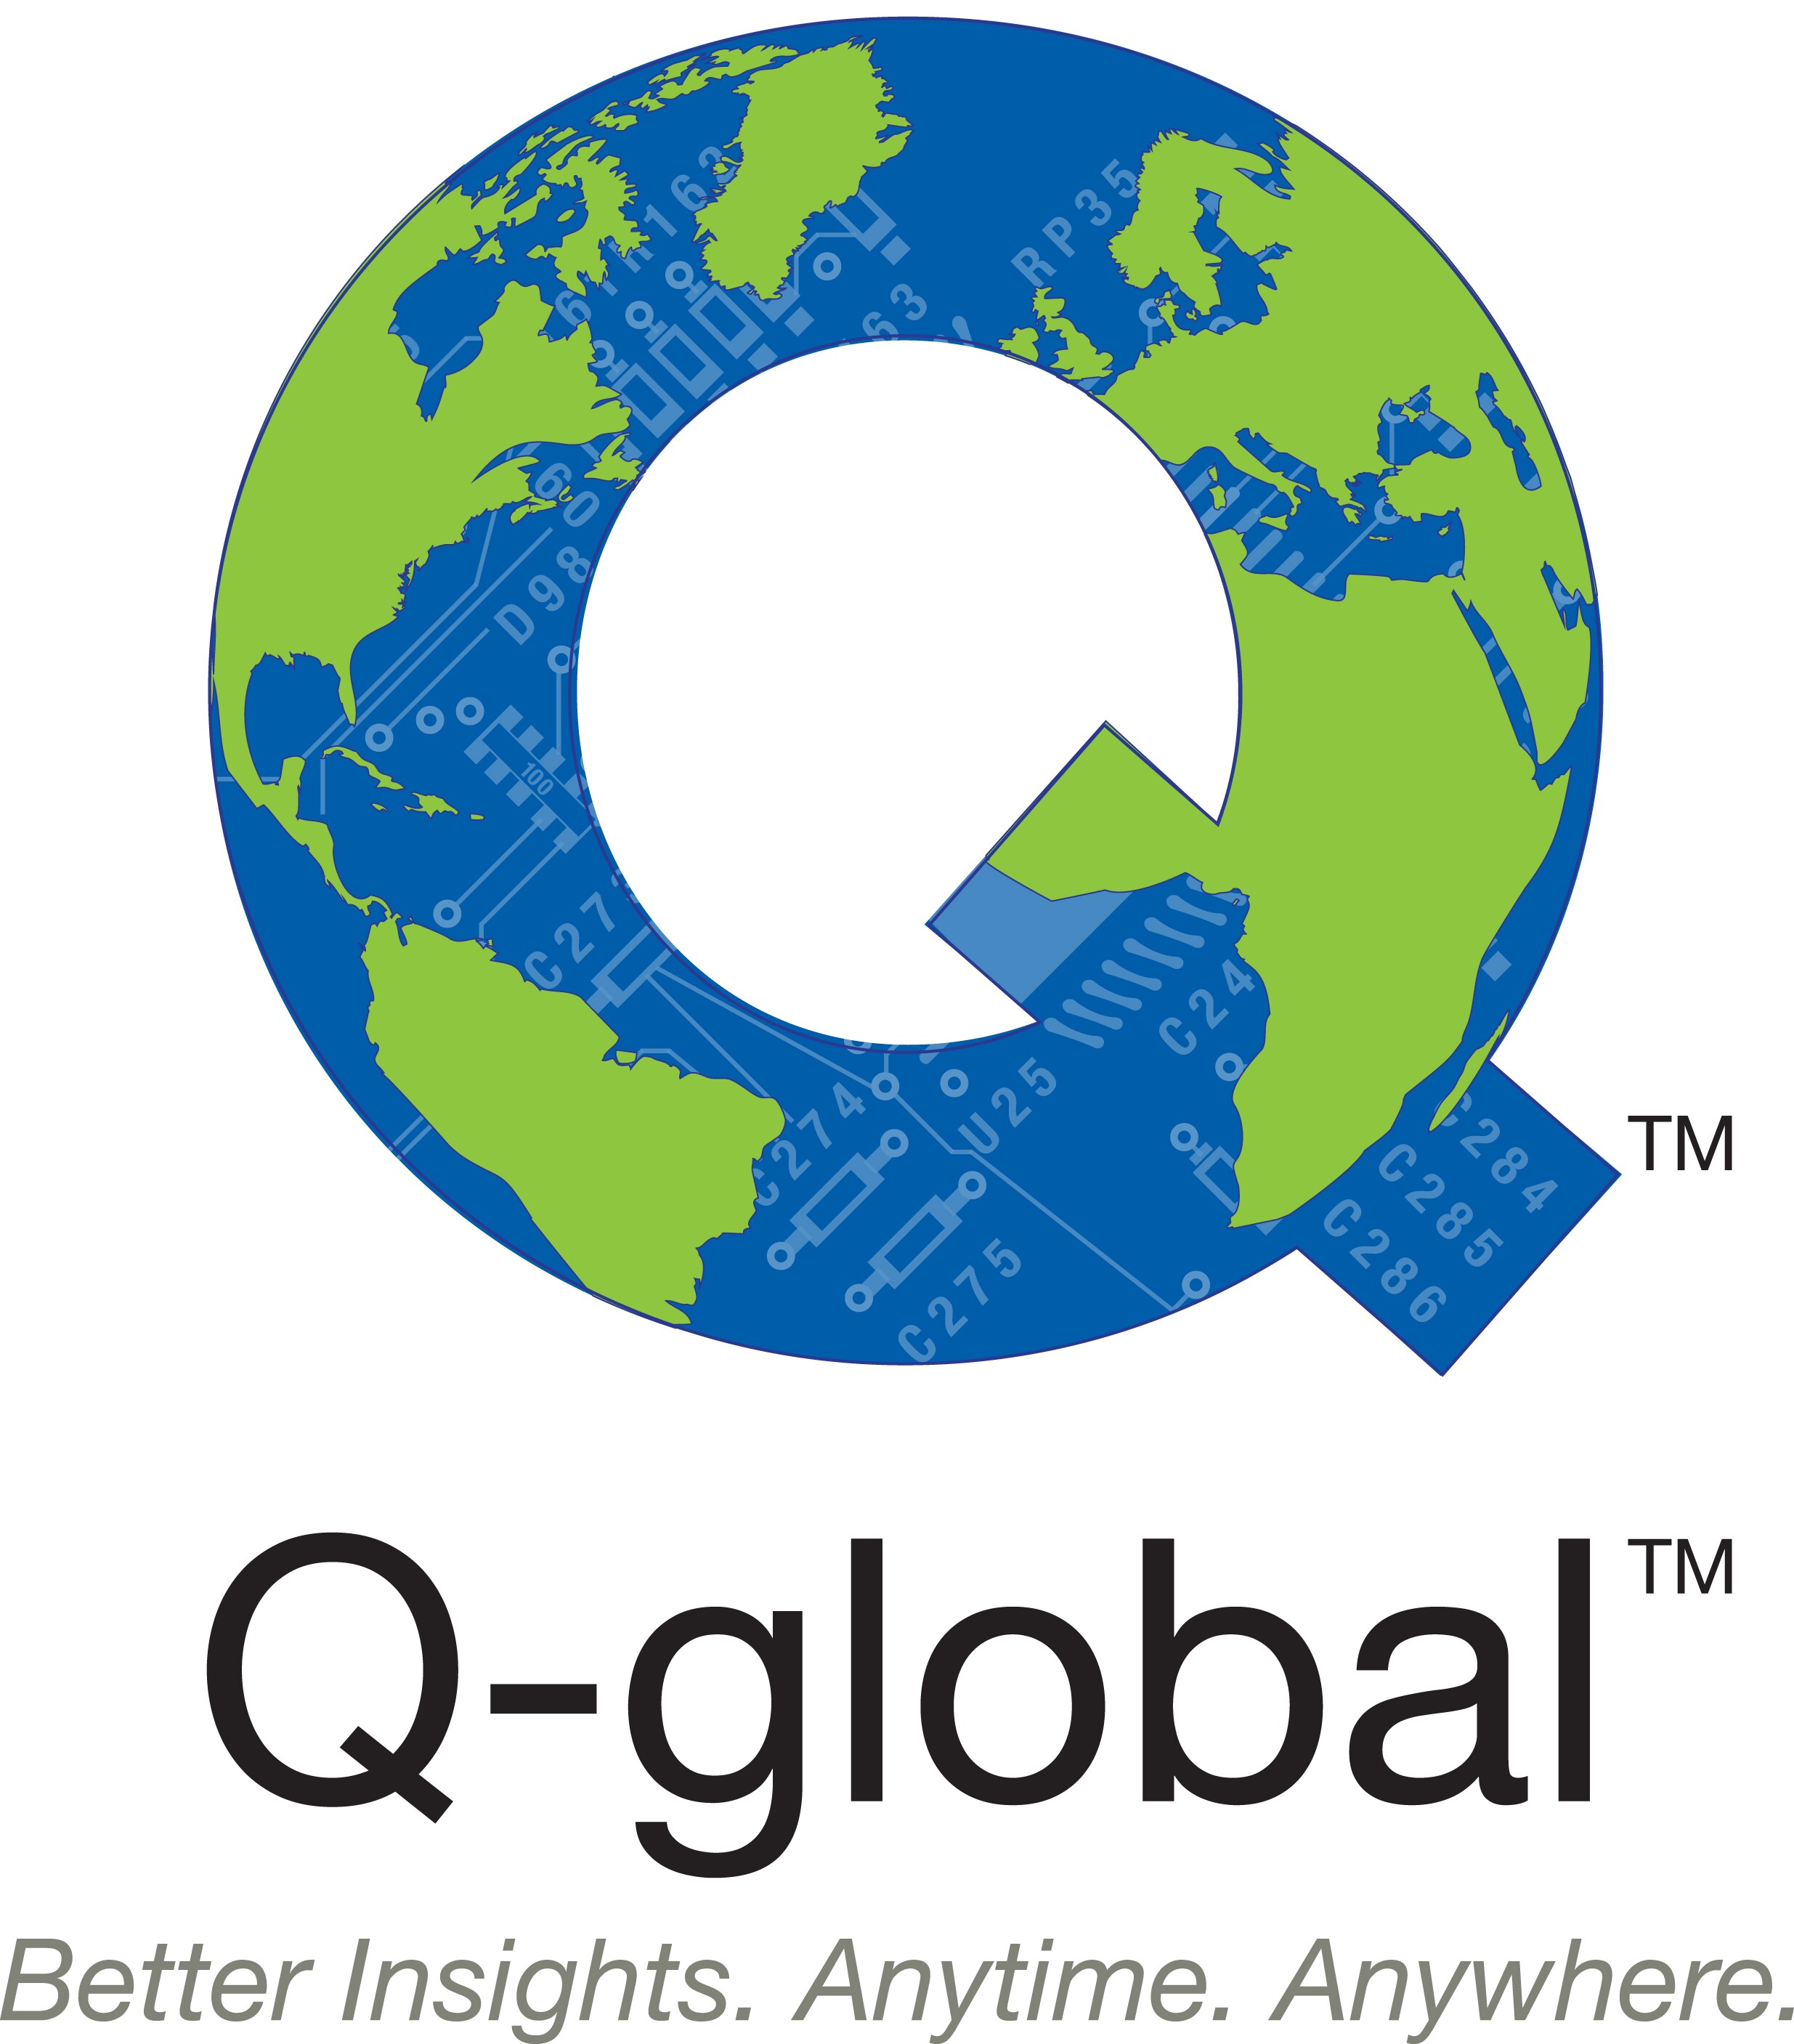 Q-global